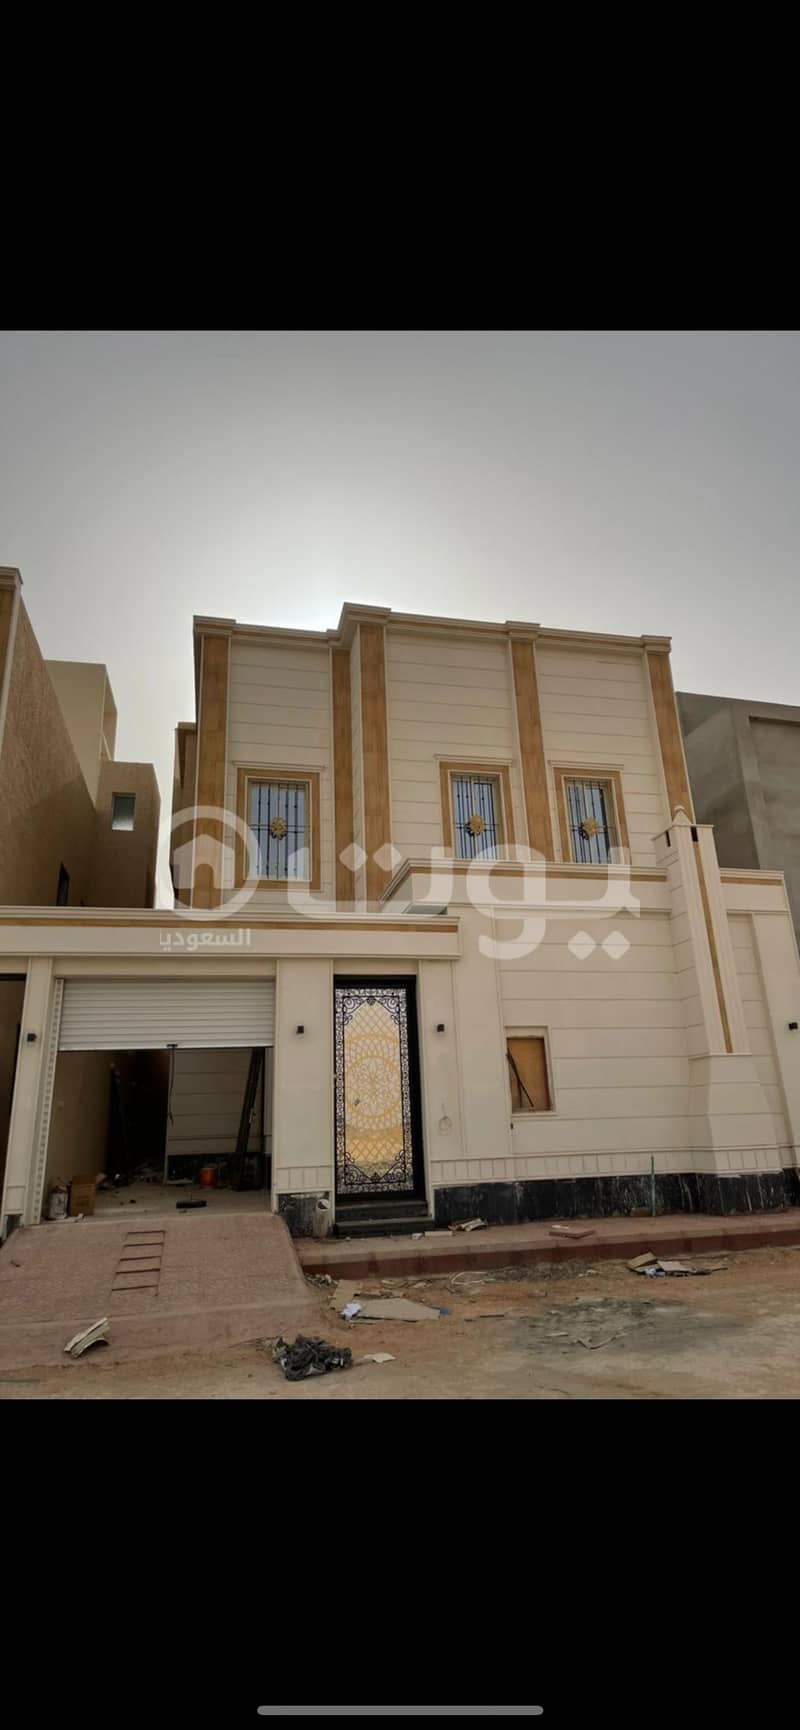 Villa 300 sqm for sale in Al Rimal, east of Riyadh